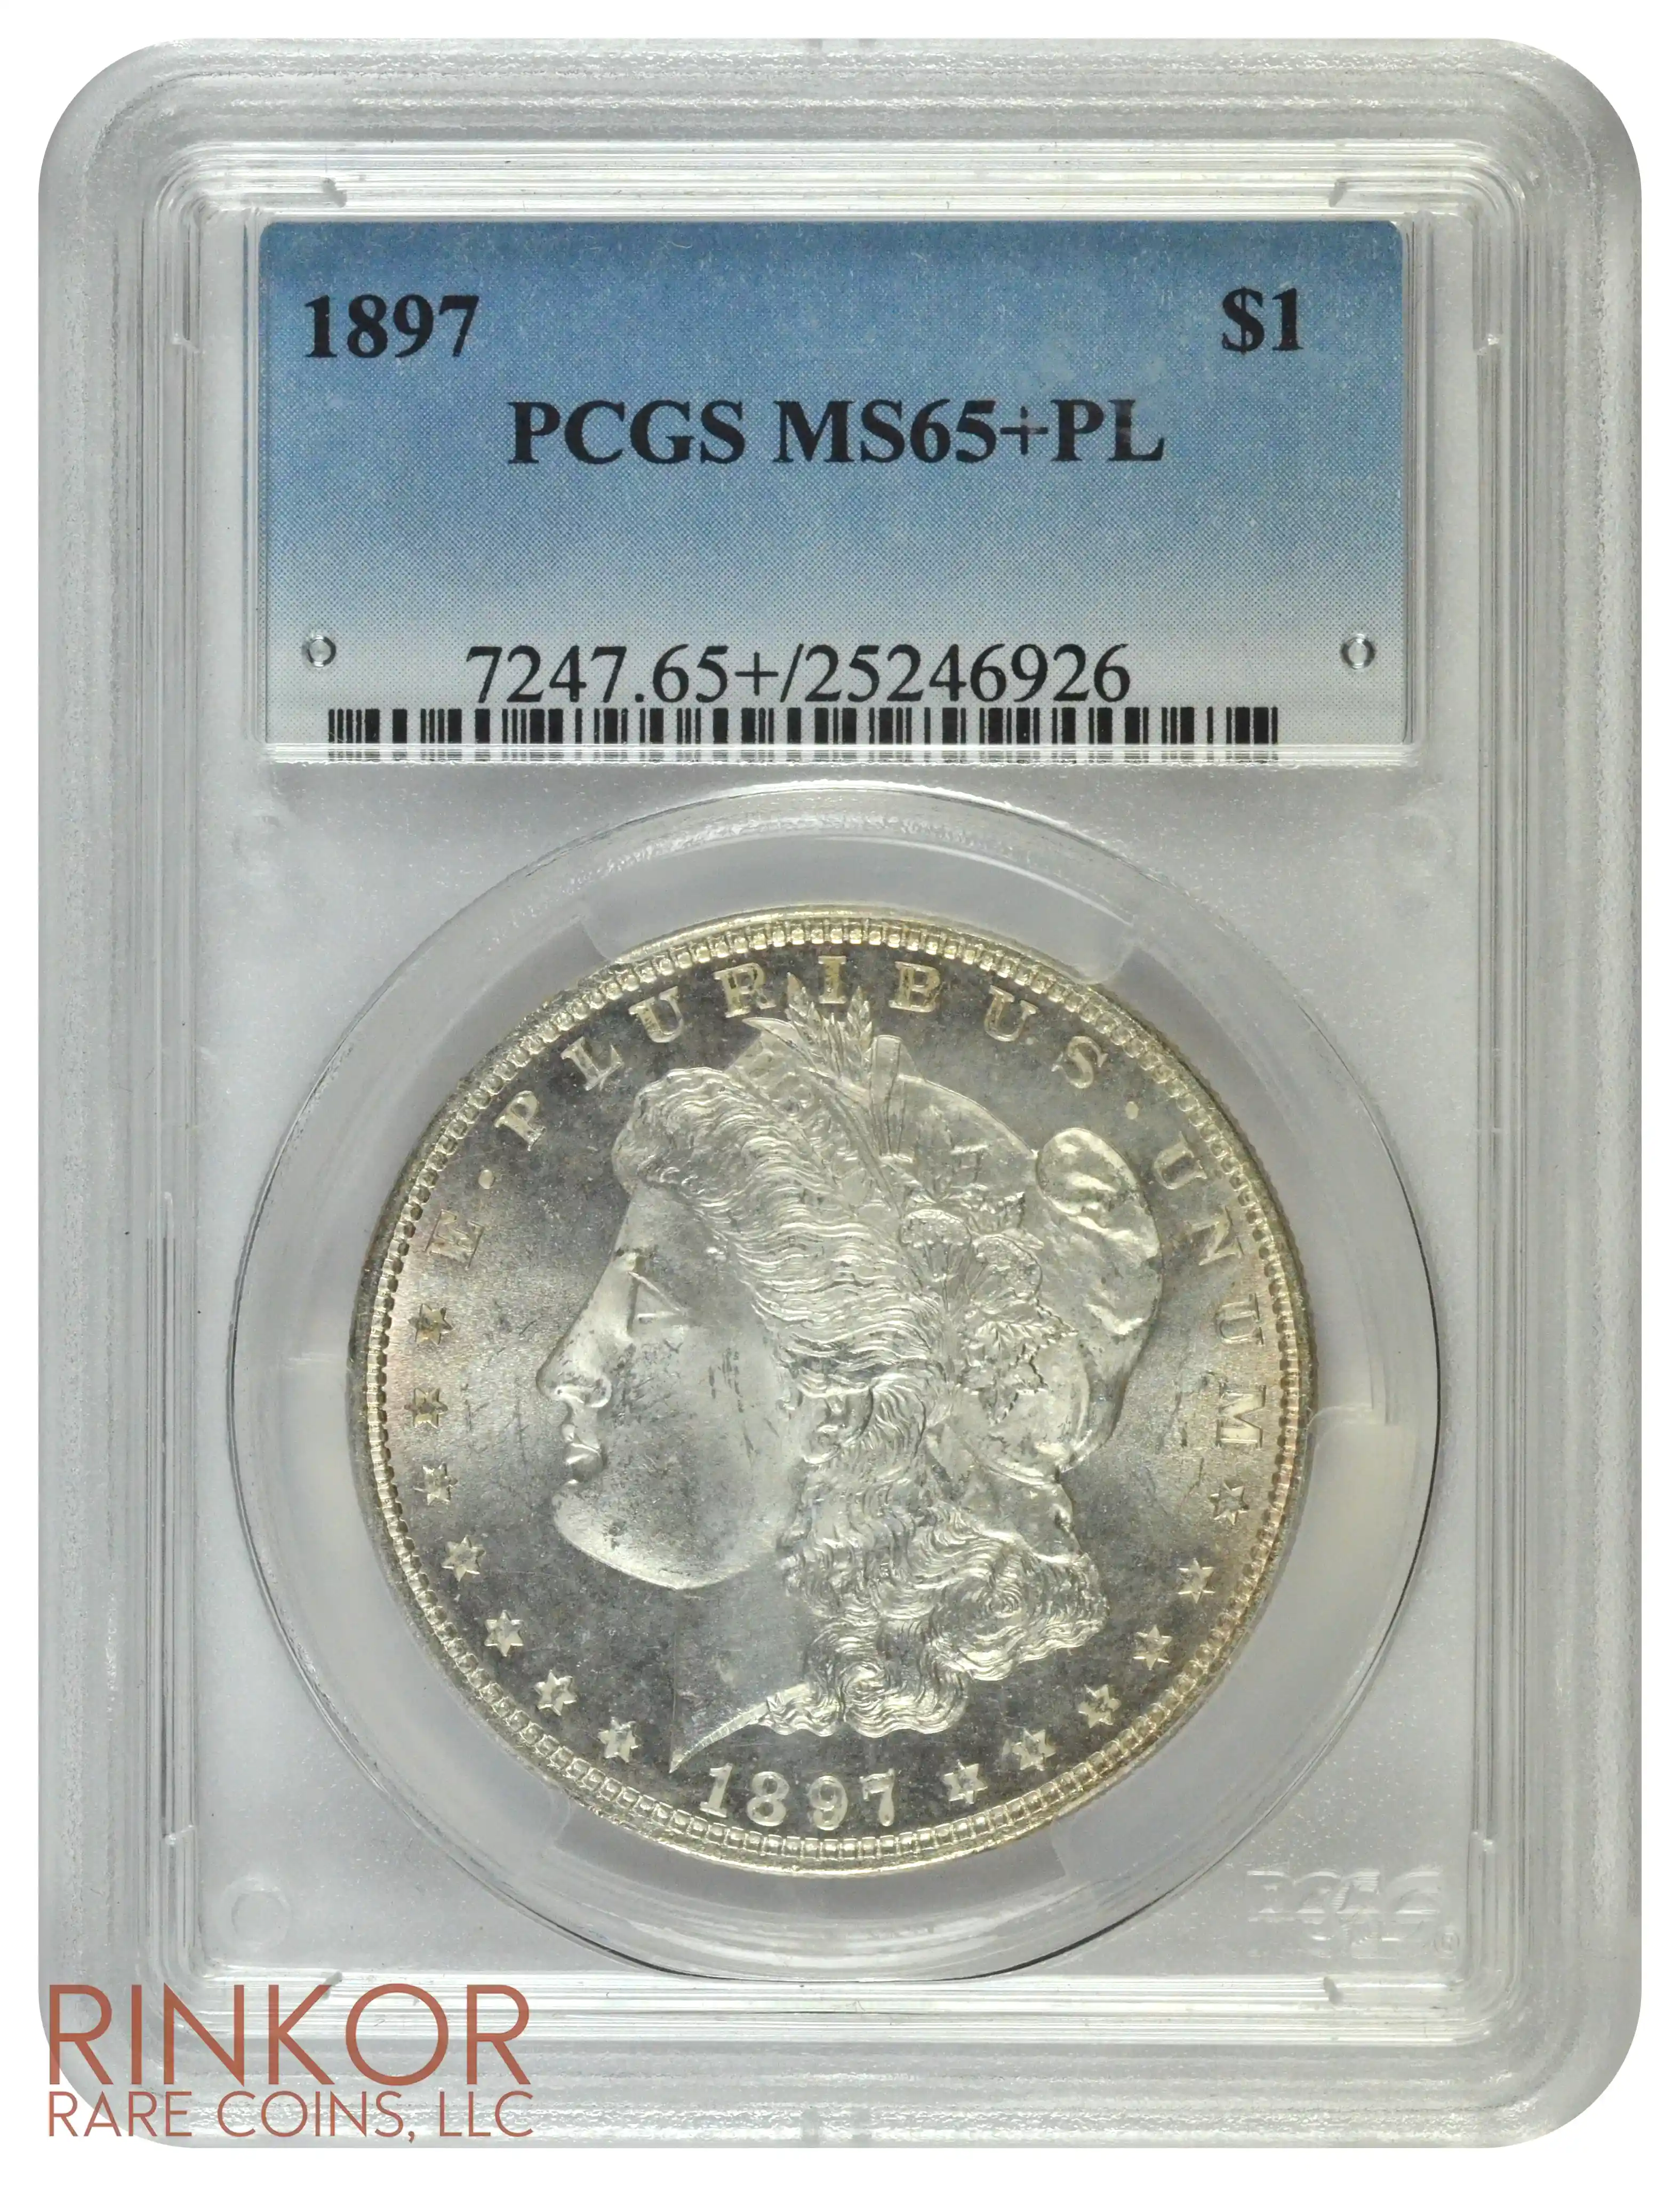 1897 $1 PCGS MS 65+ PL